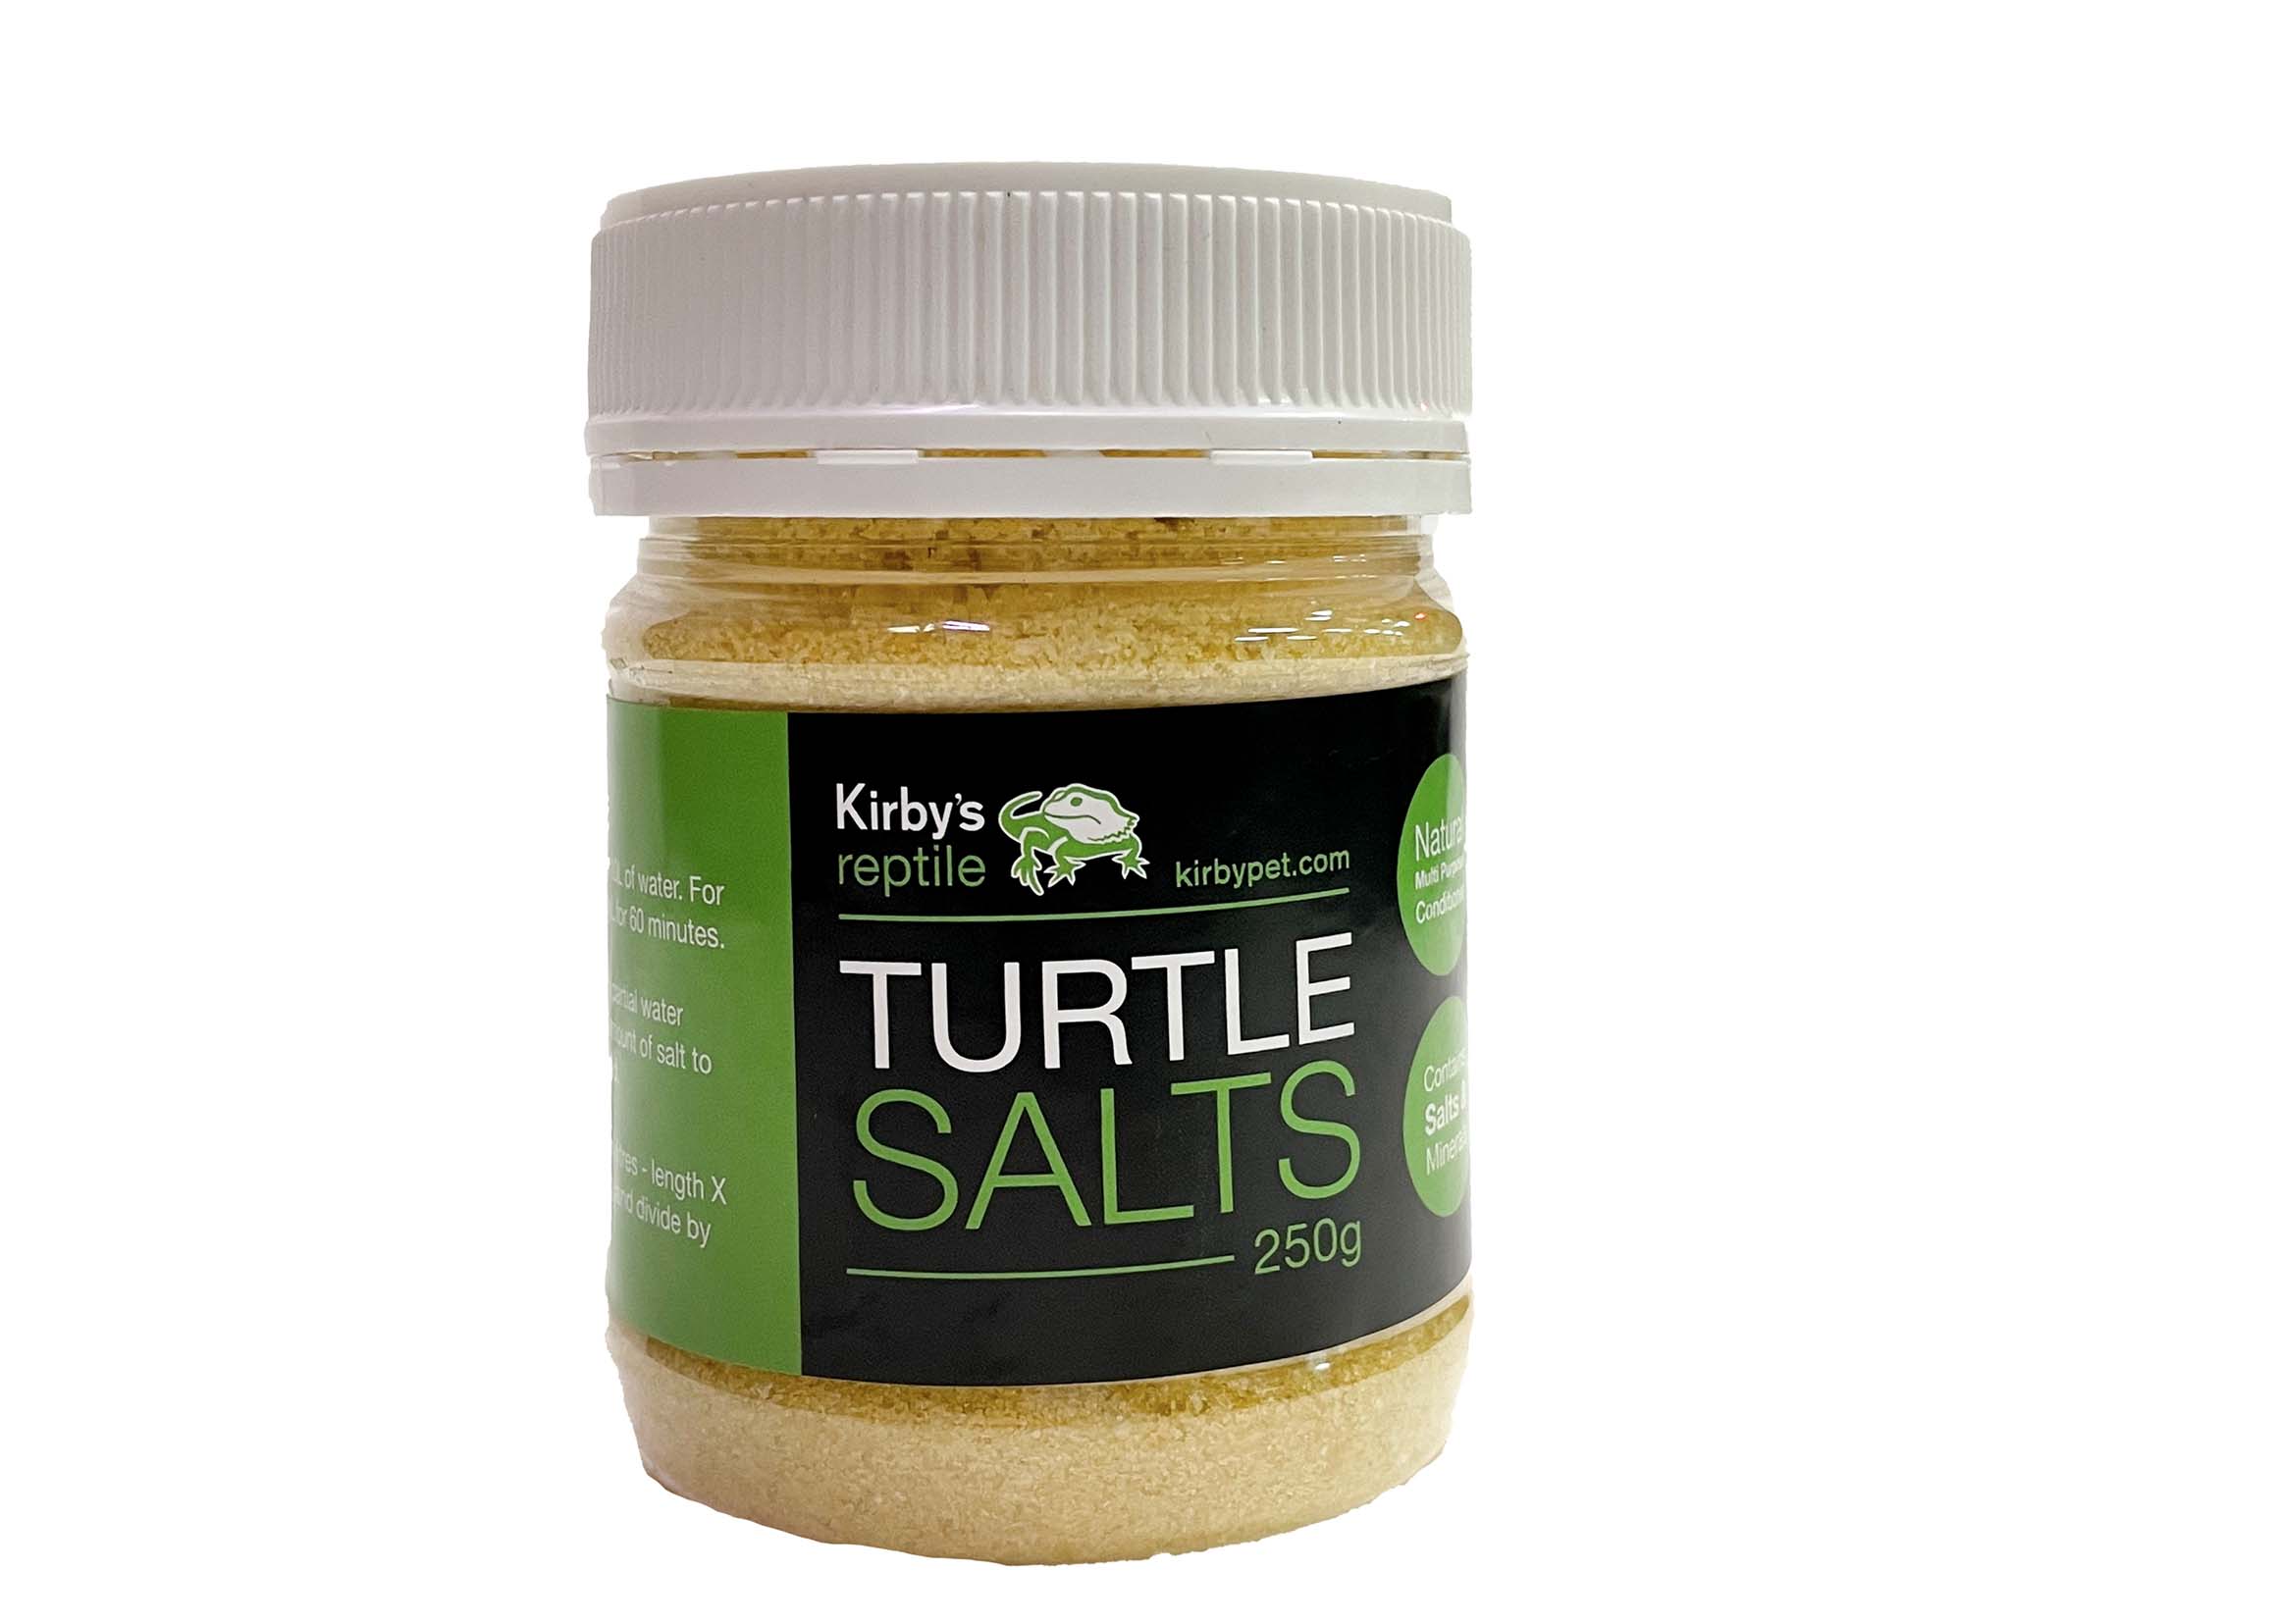 Kirby Reptile Turtle Salts